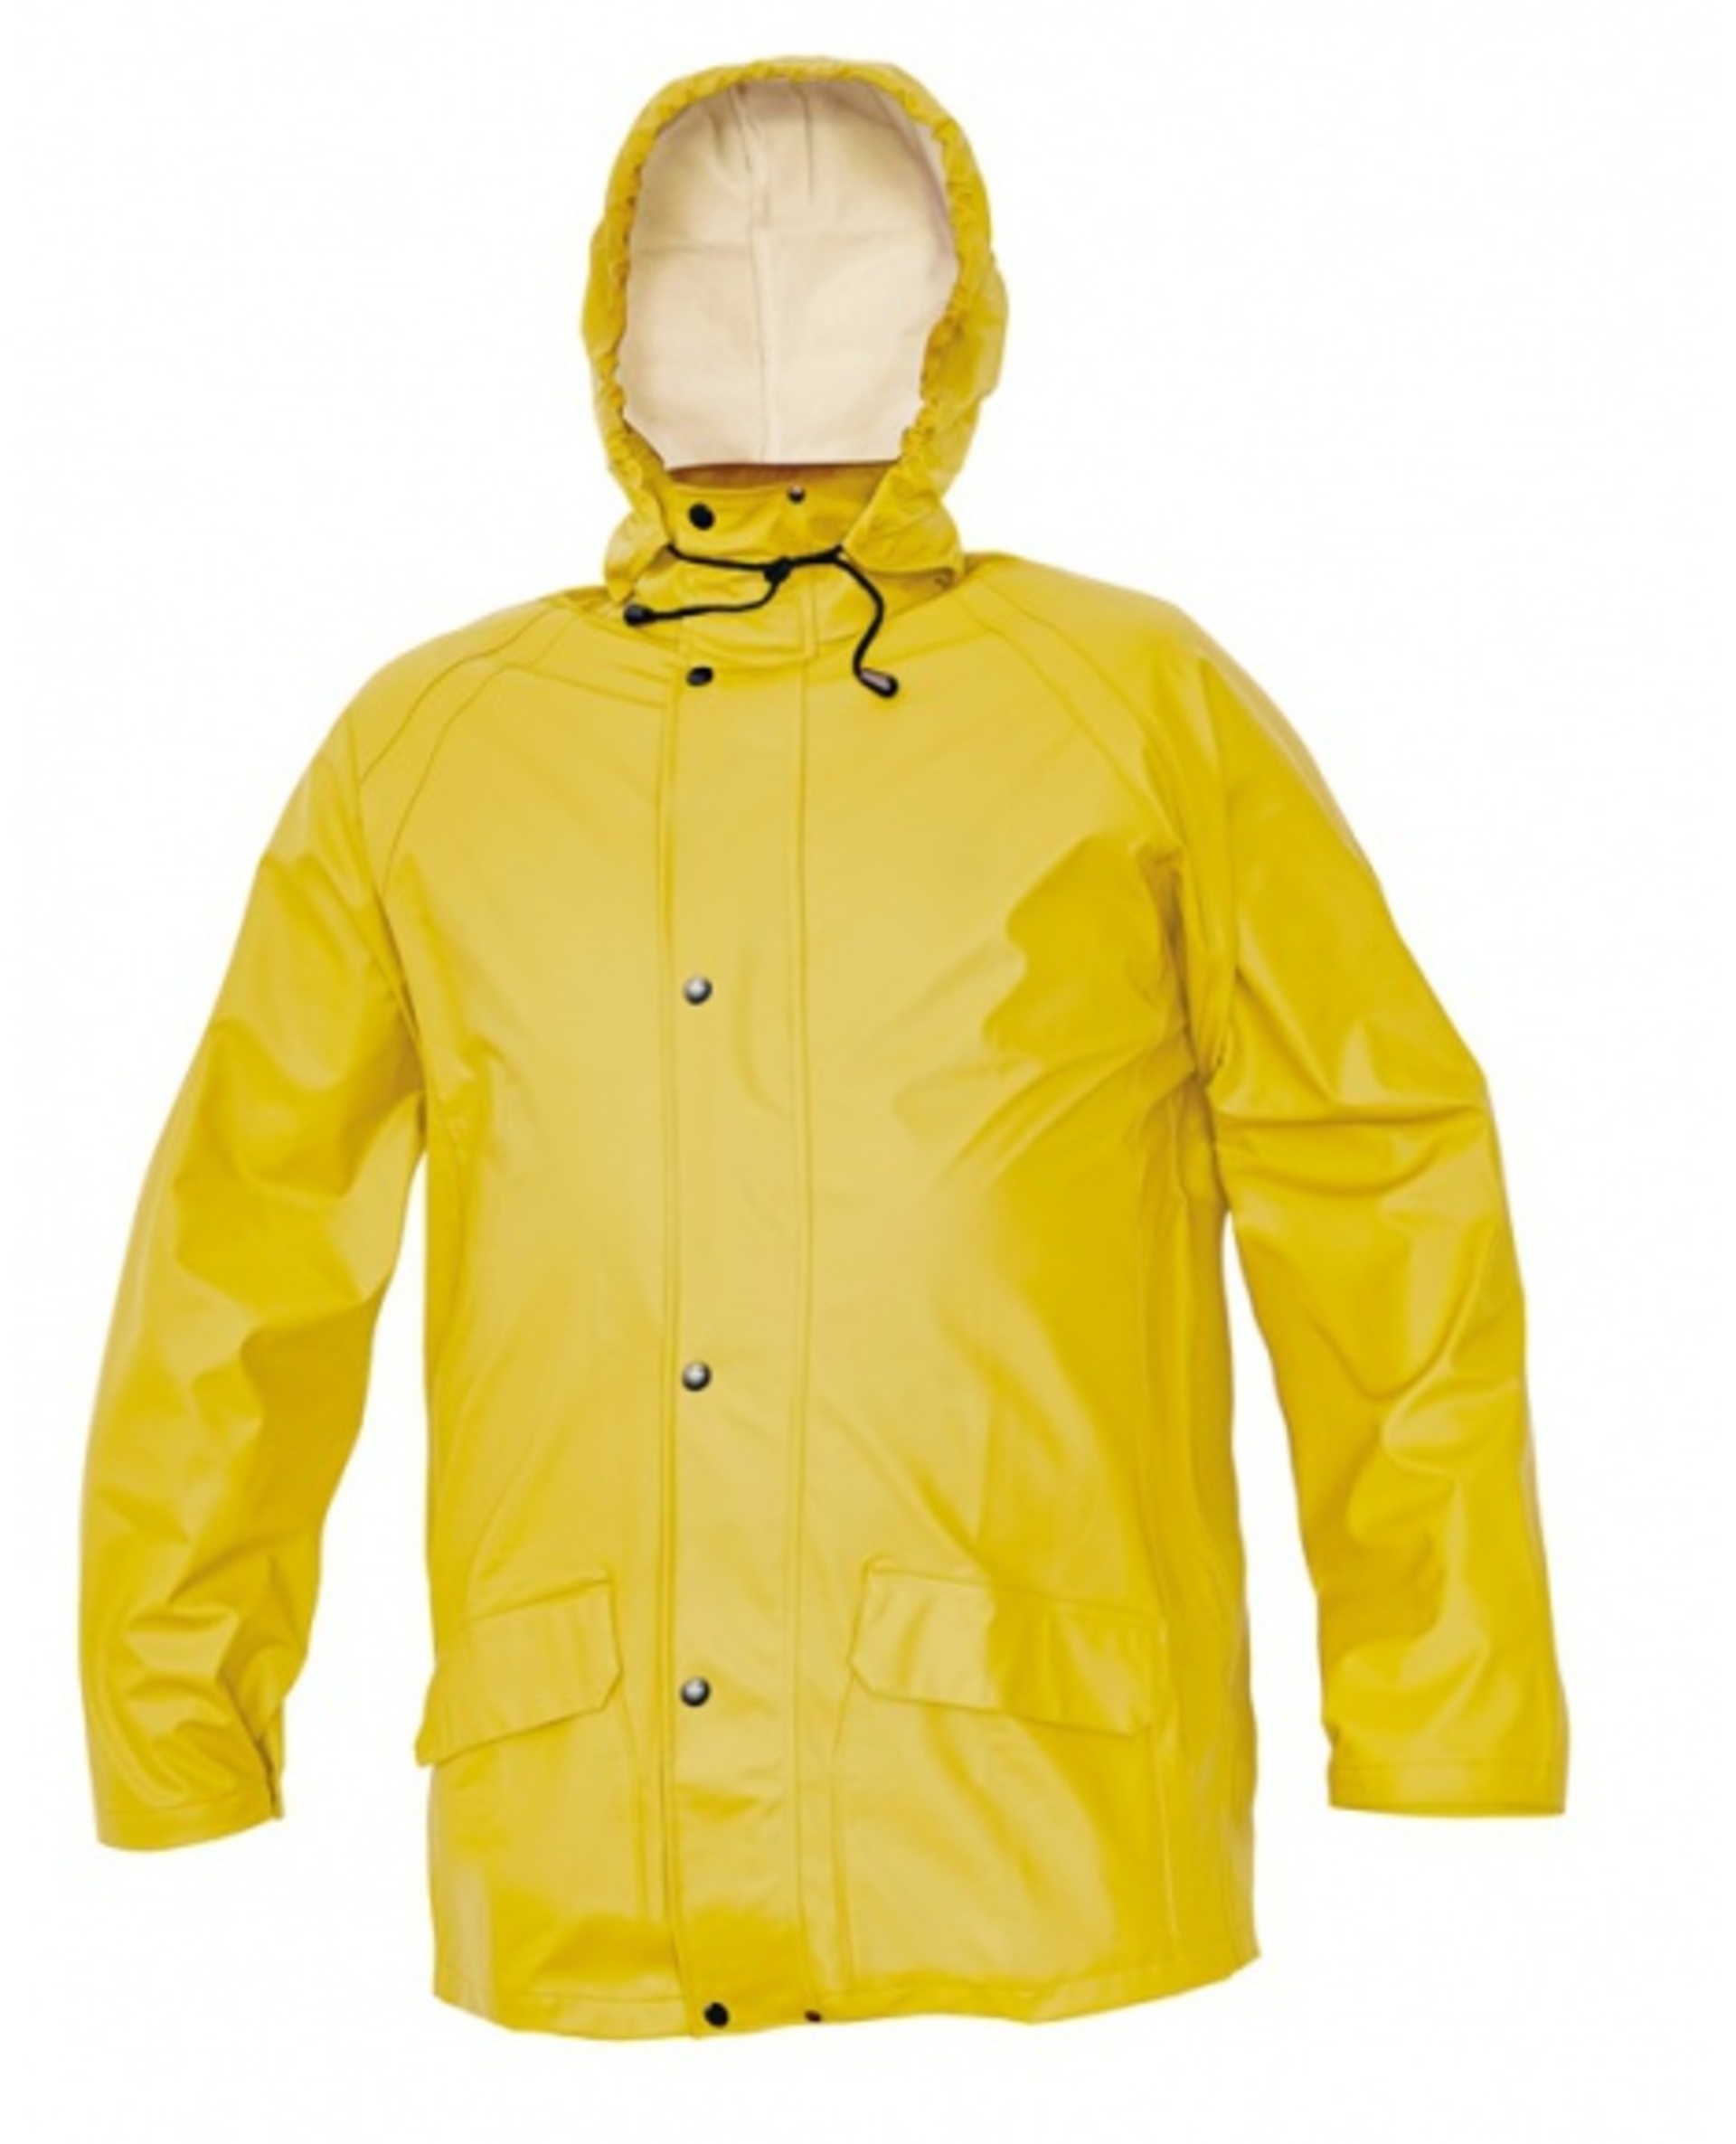 Cerva SIRET SET Oblek nepromokavý žlutá 3XL + Bezplatné vrácení zboží